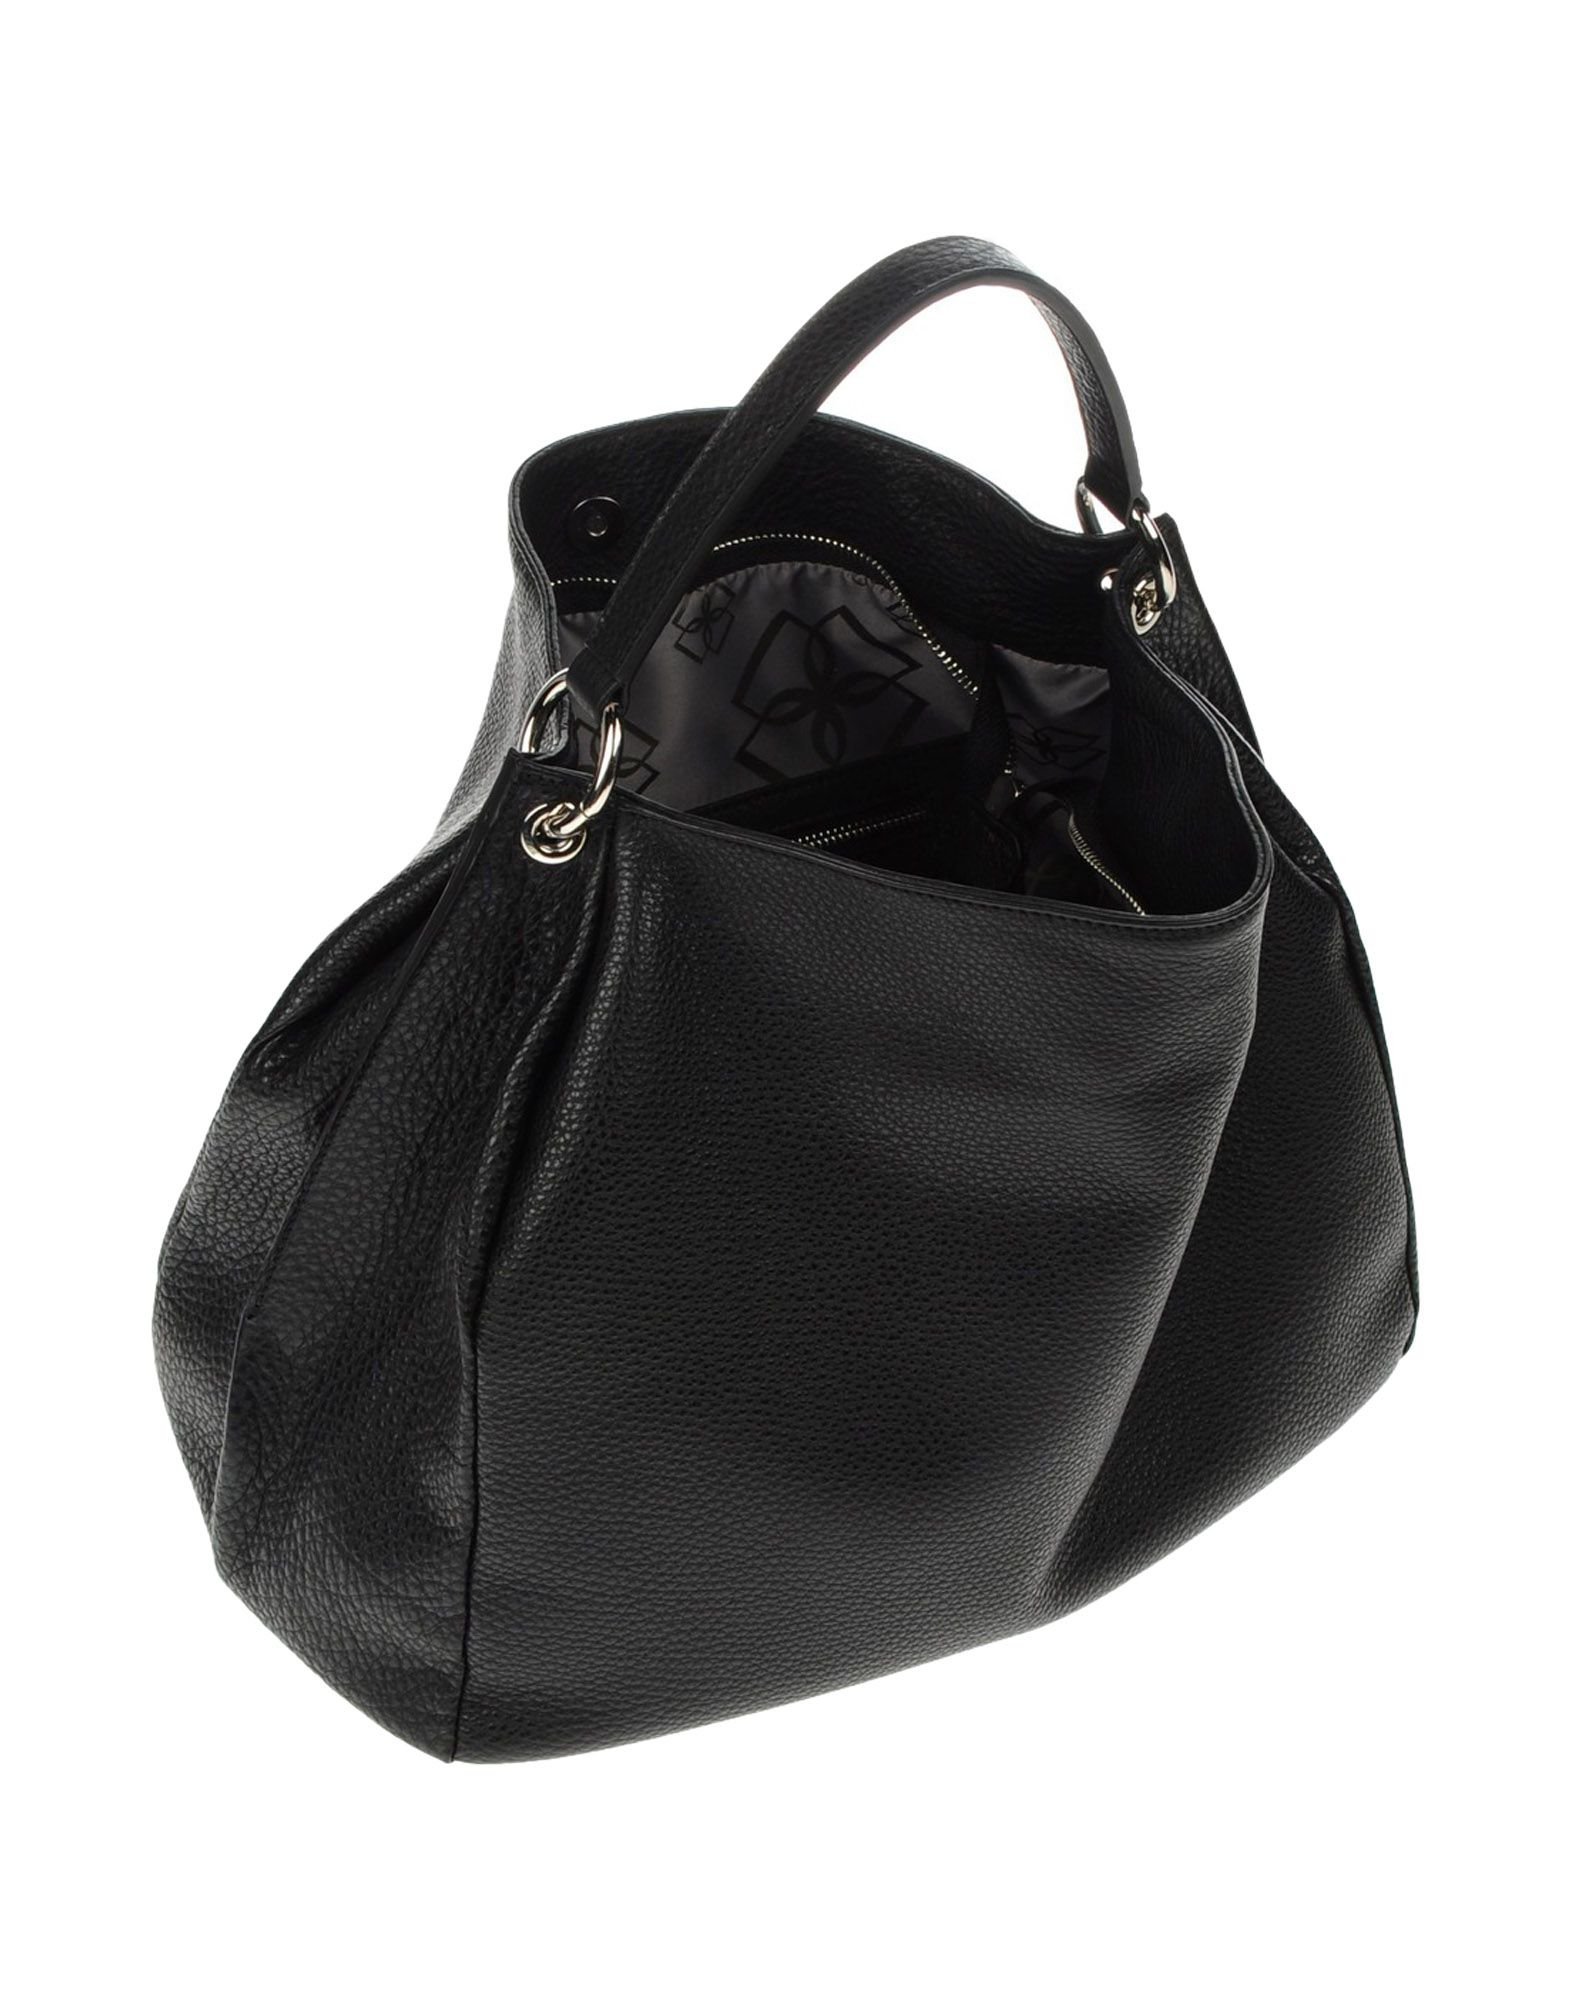 Lyst - Desmo Handbag in Black